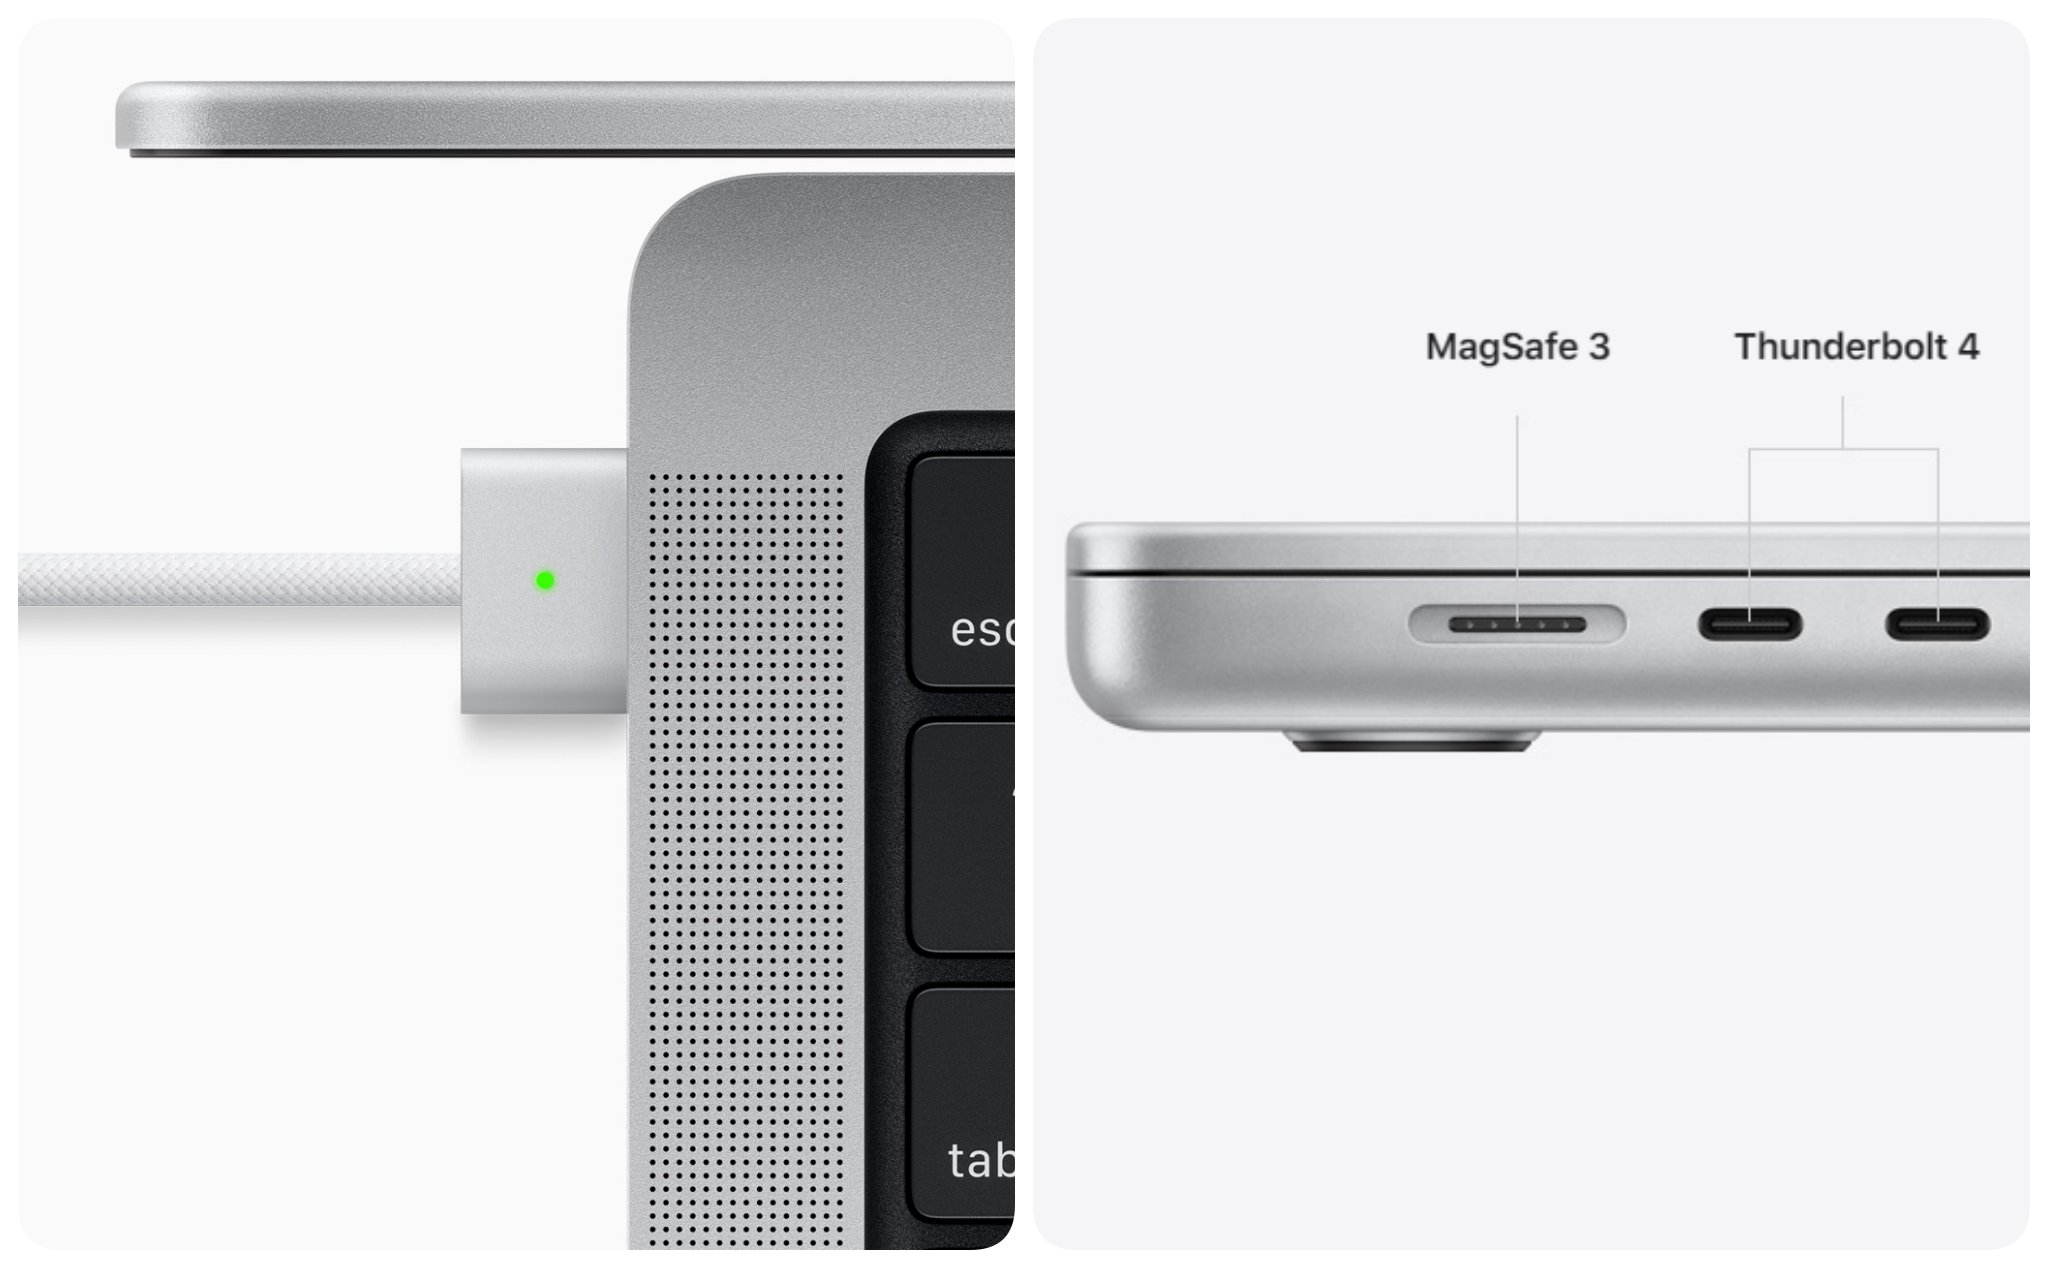 MacBook Pro 16" hỗ trợ chuẩn USB PD 3.1 EPR với dây MagSafe 3, hiện chưa có cáp 2 đầu USB-C mới